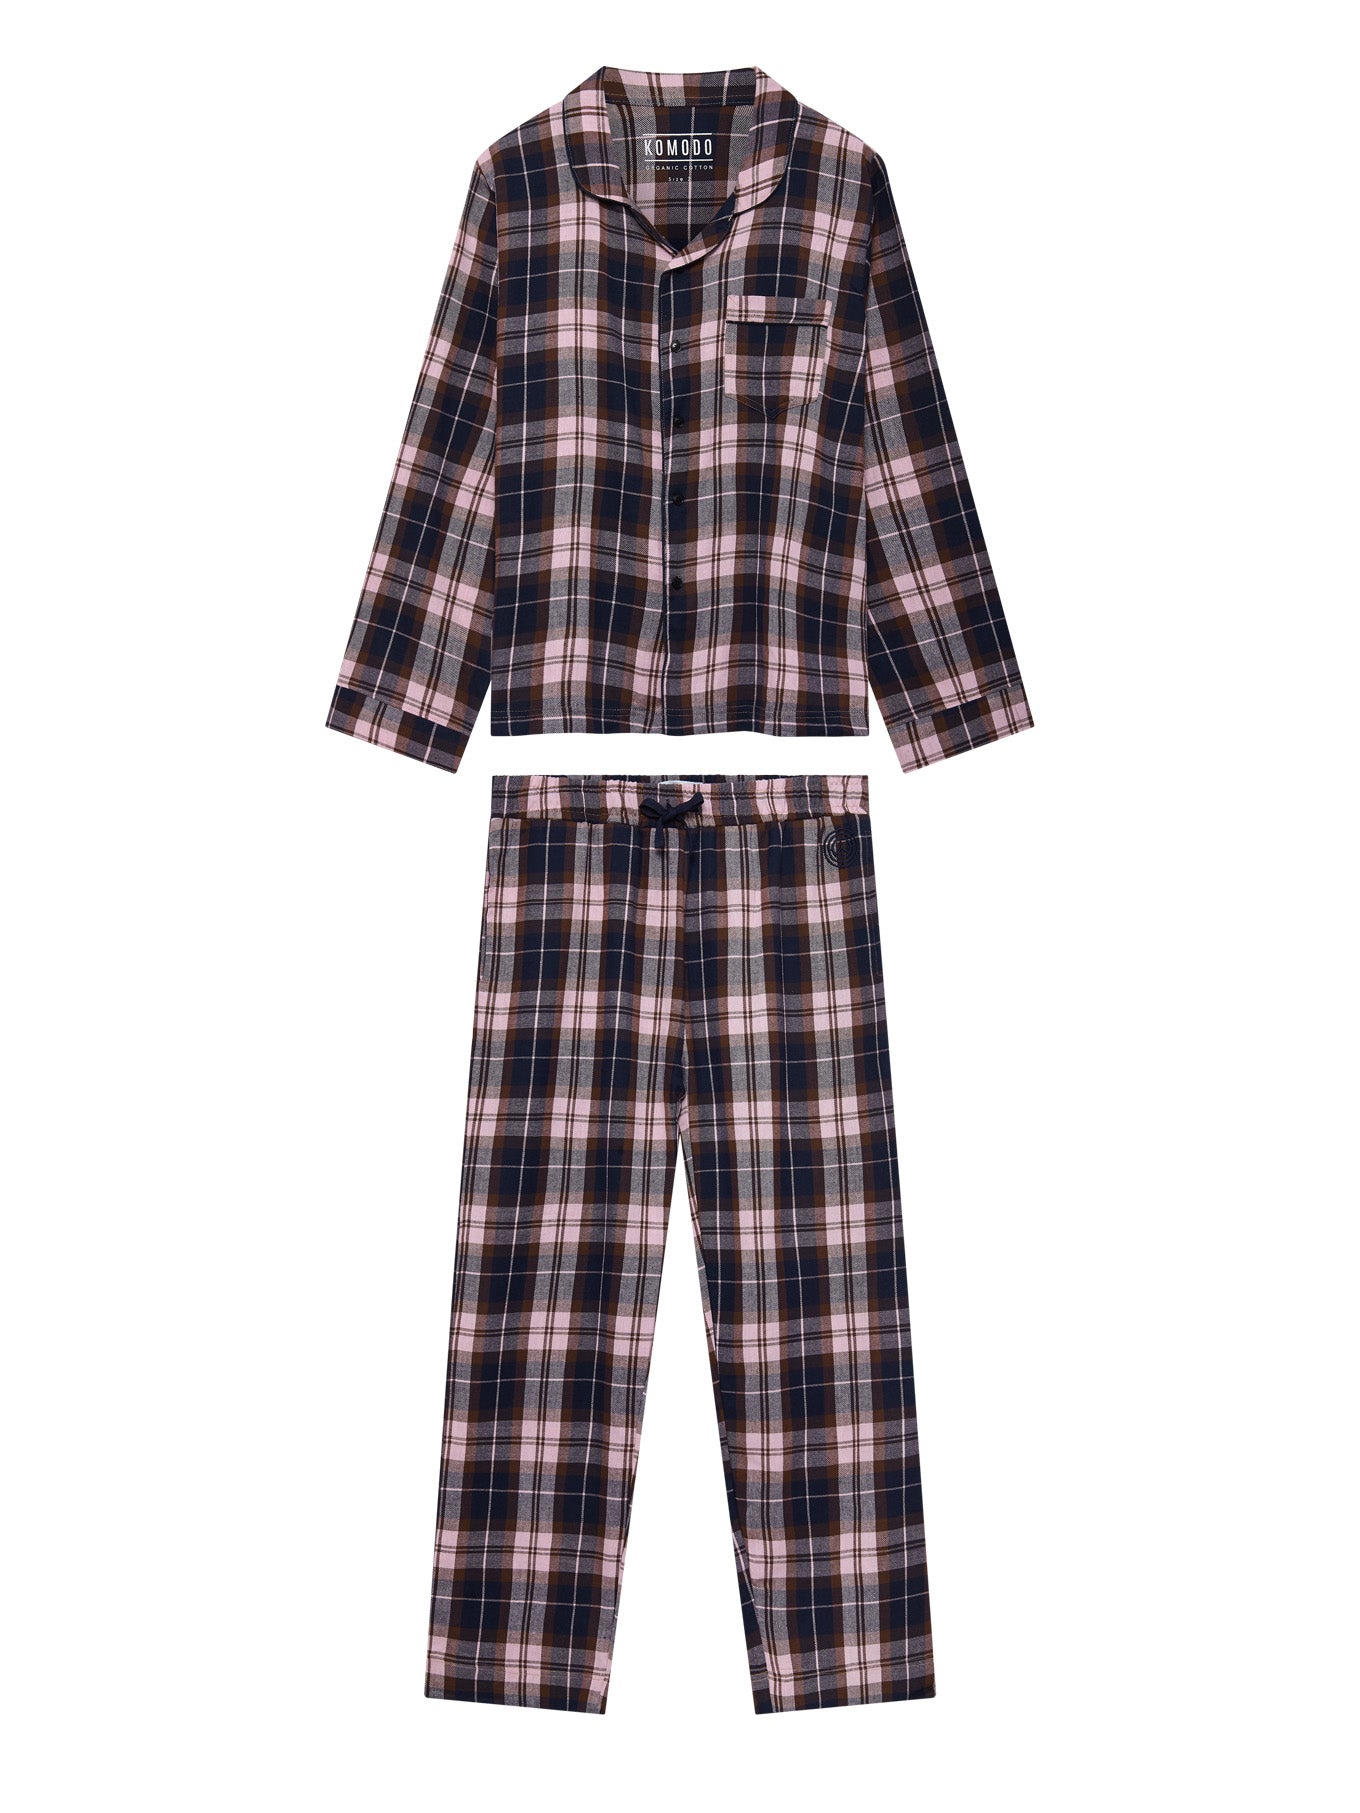 Pyjama Set Modell: JimJam